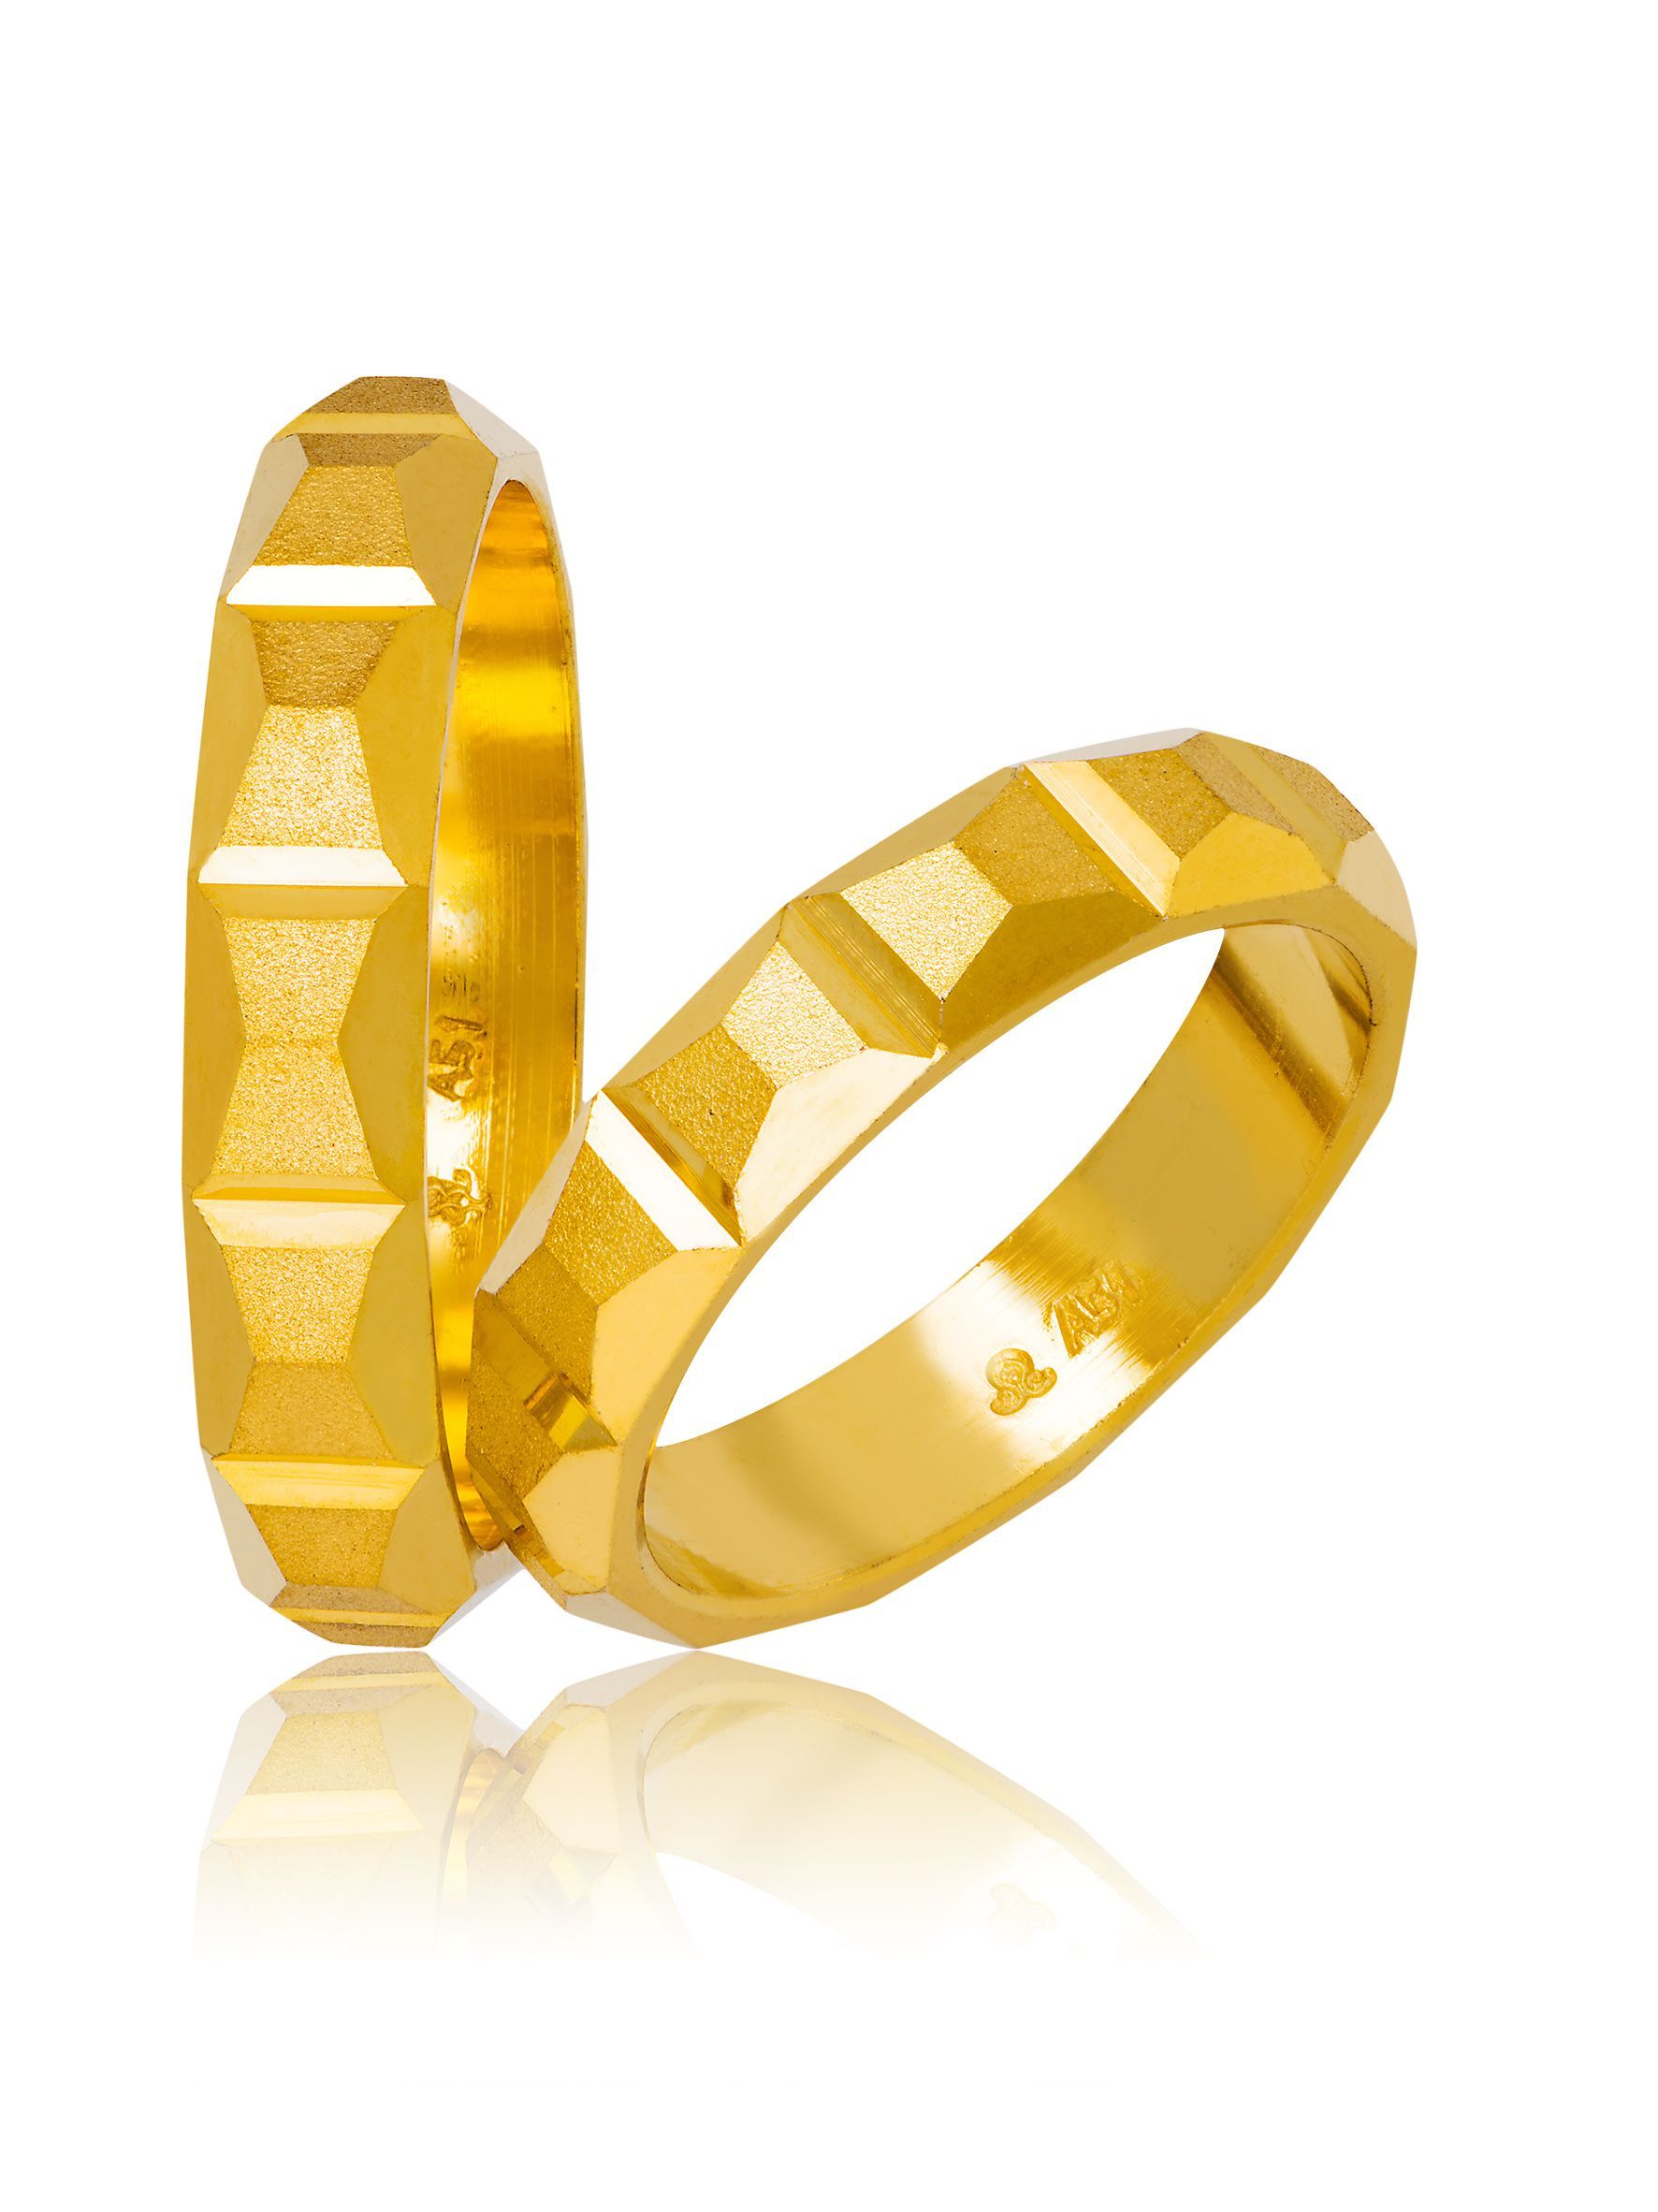 Golden wedding rings 4.5mm (code 711)